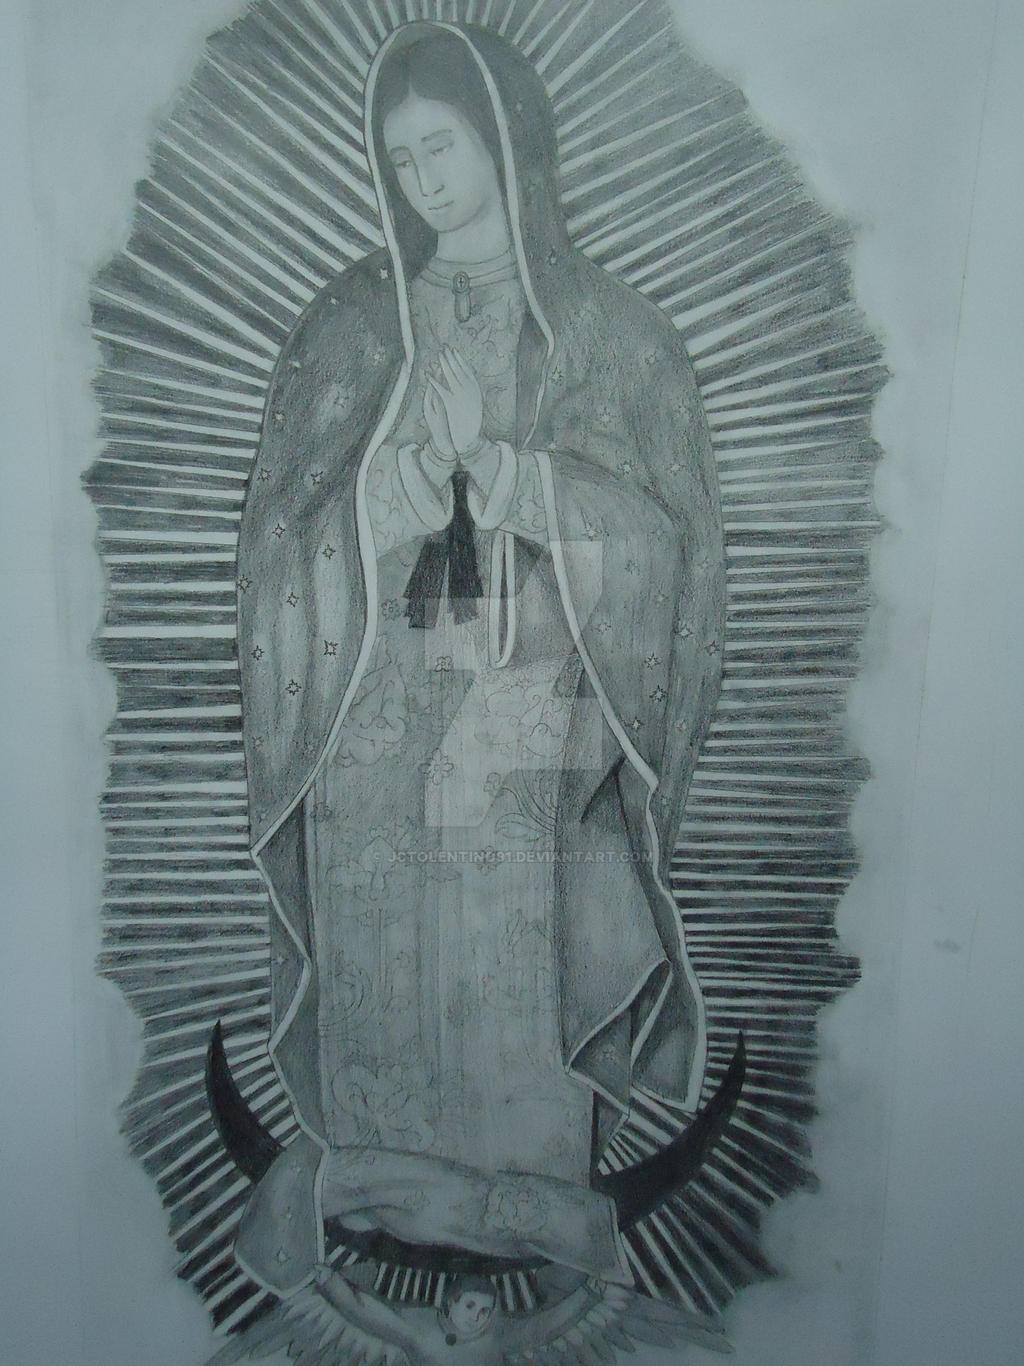 Virgen de Guadalupe - a lapiz by JCTolentino91 on DeviantArt